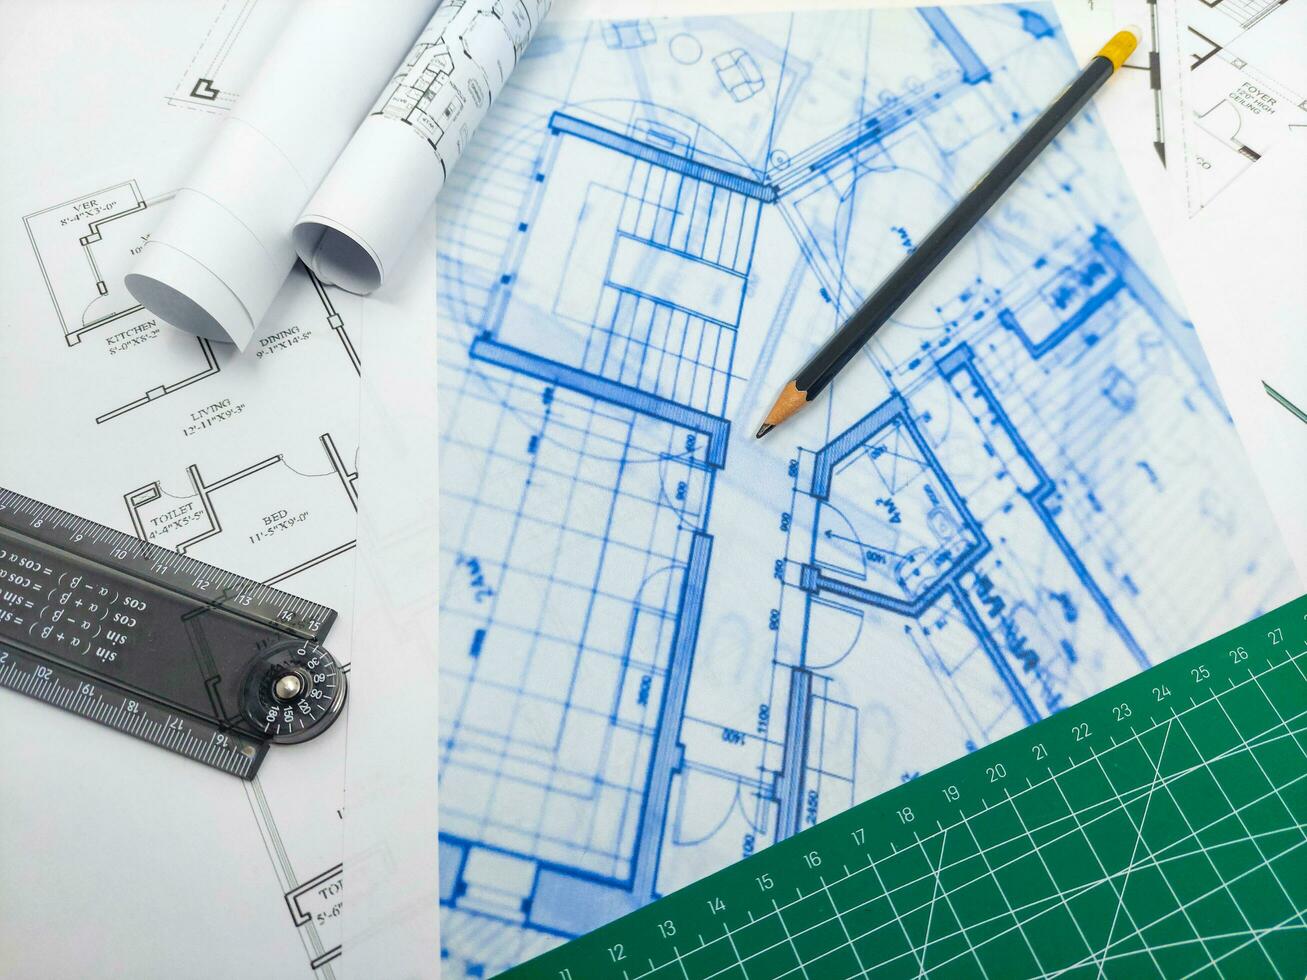 des crayons, règle, vert mat et papier ingénierie maison dessins et plans. photo